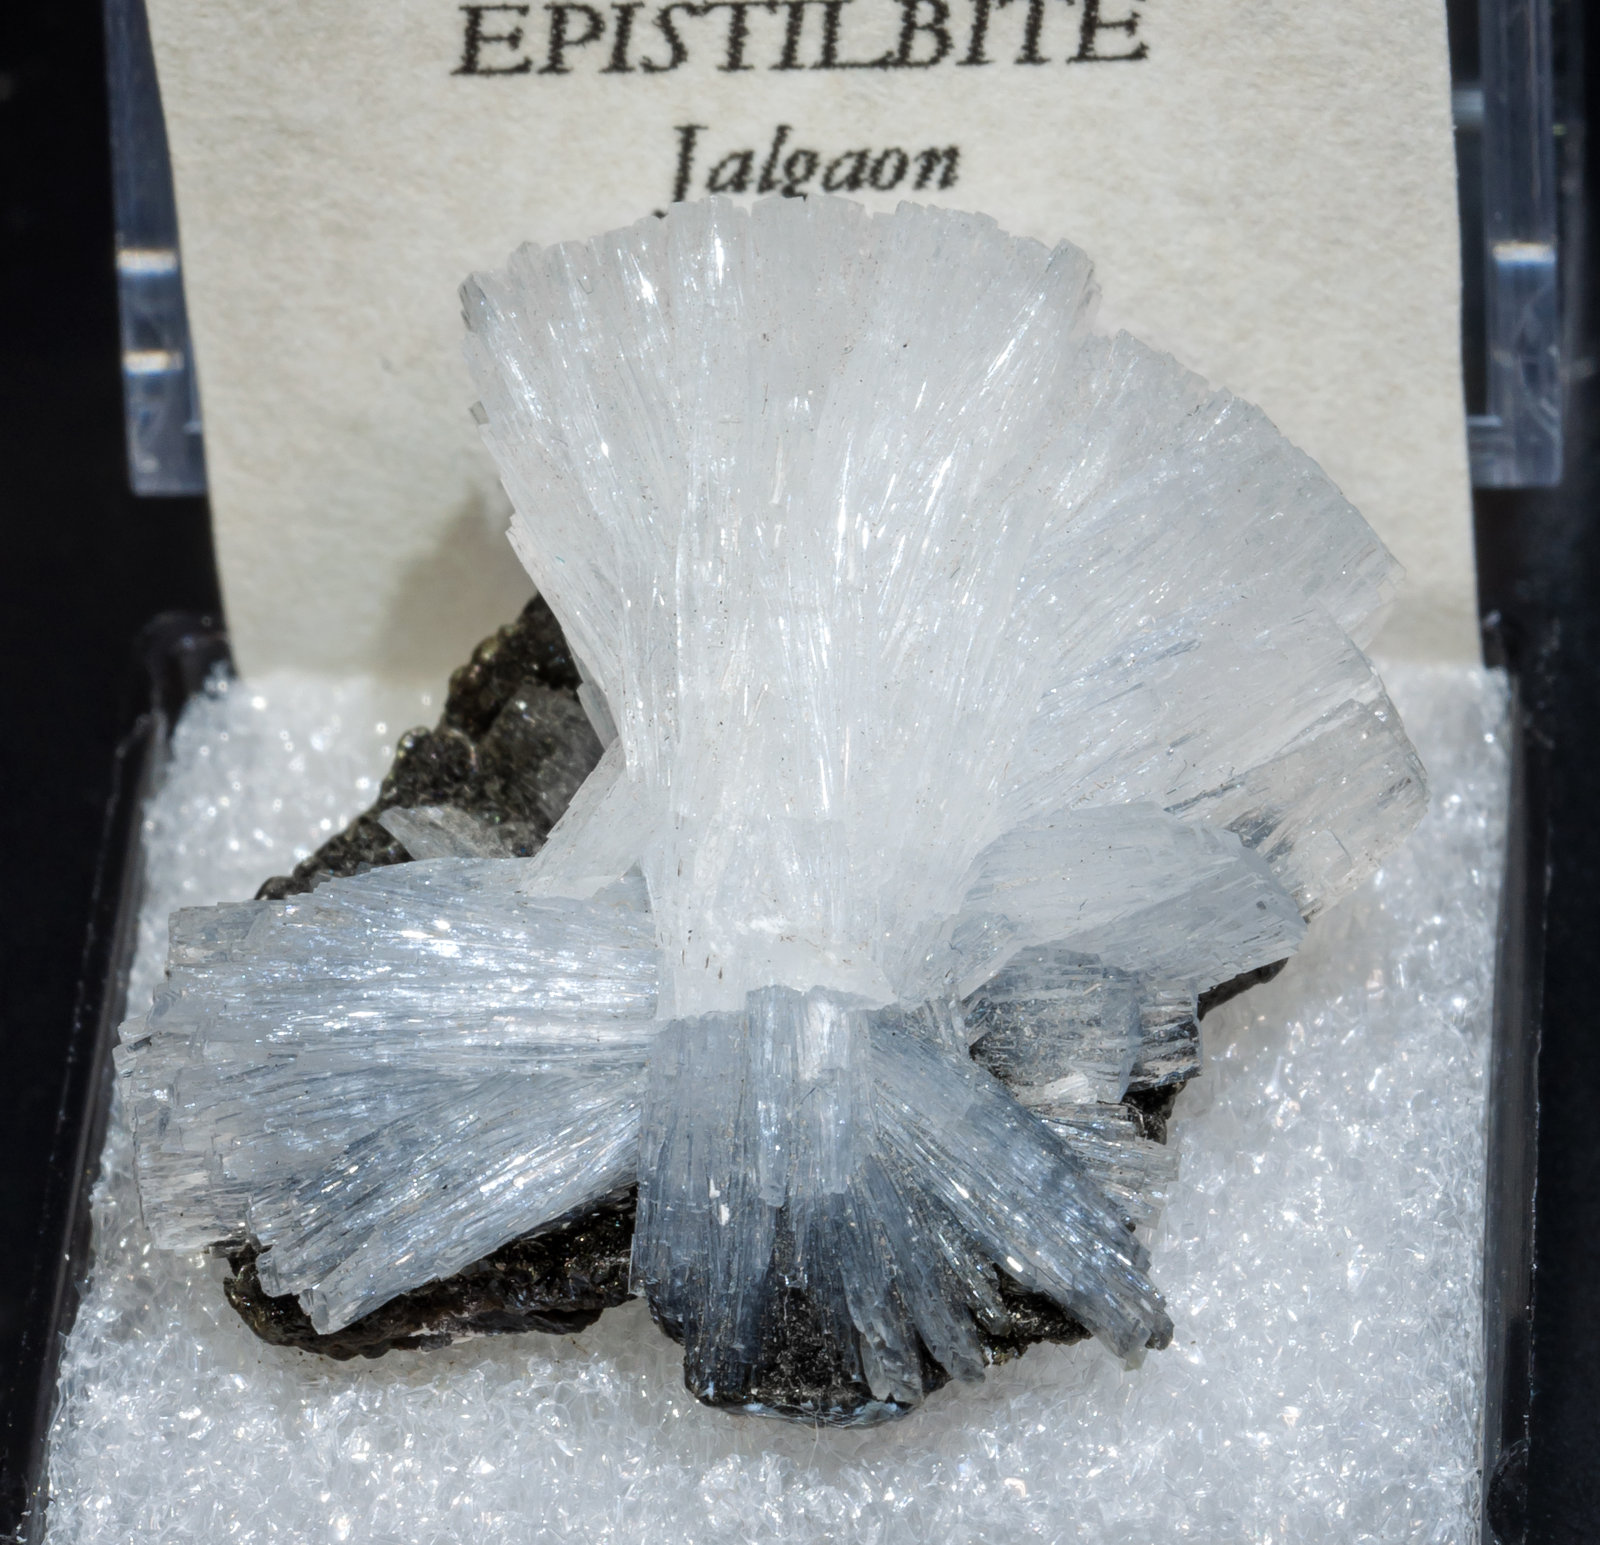 specimens/s_imagesAJ1/Epistilbite-TB62AJ1f2.jpg